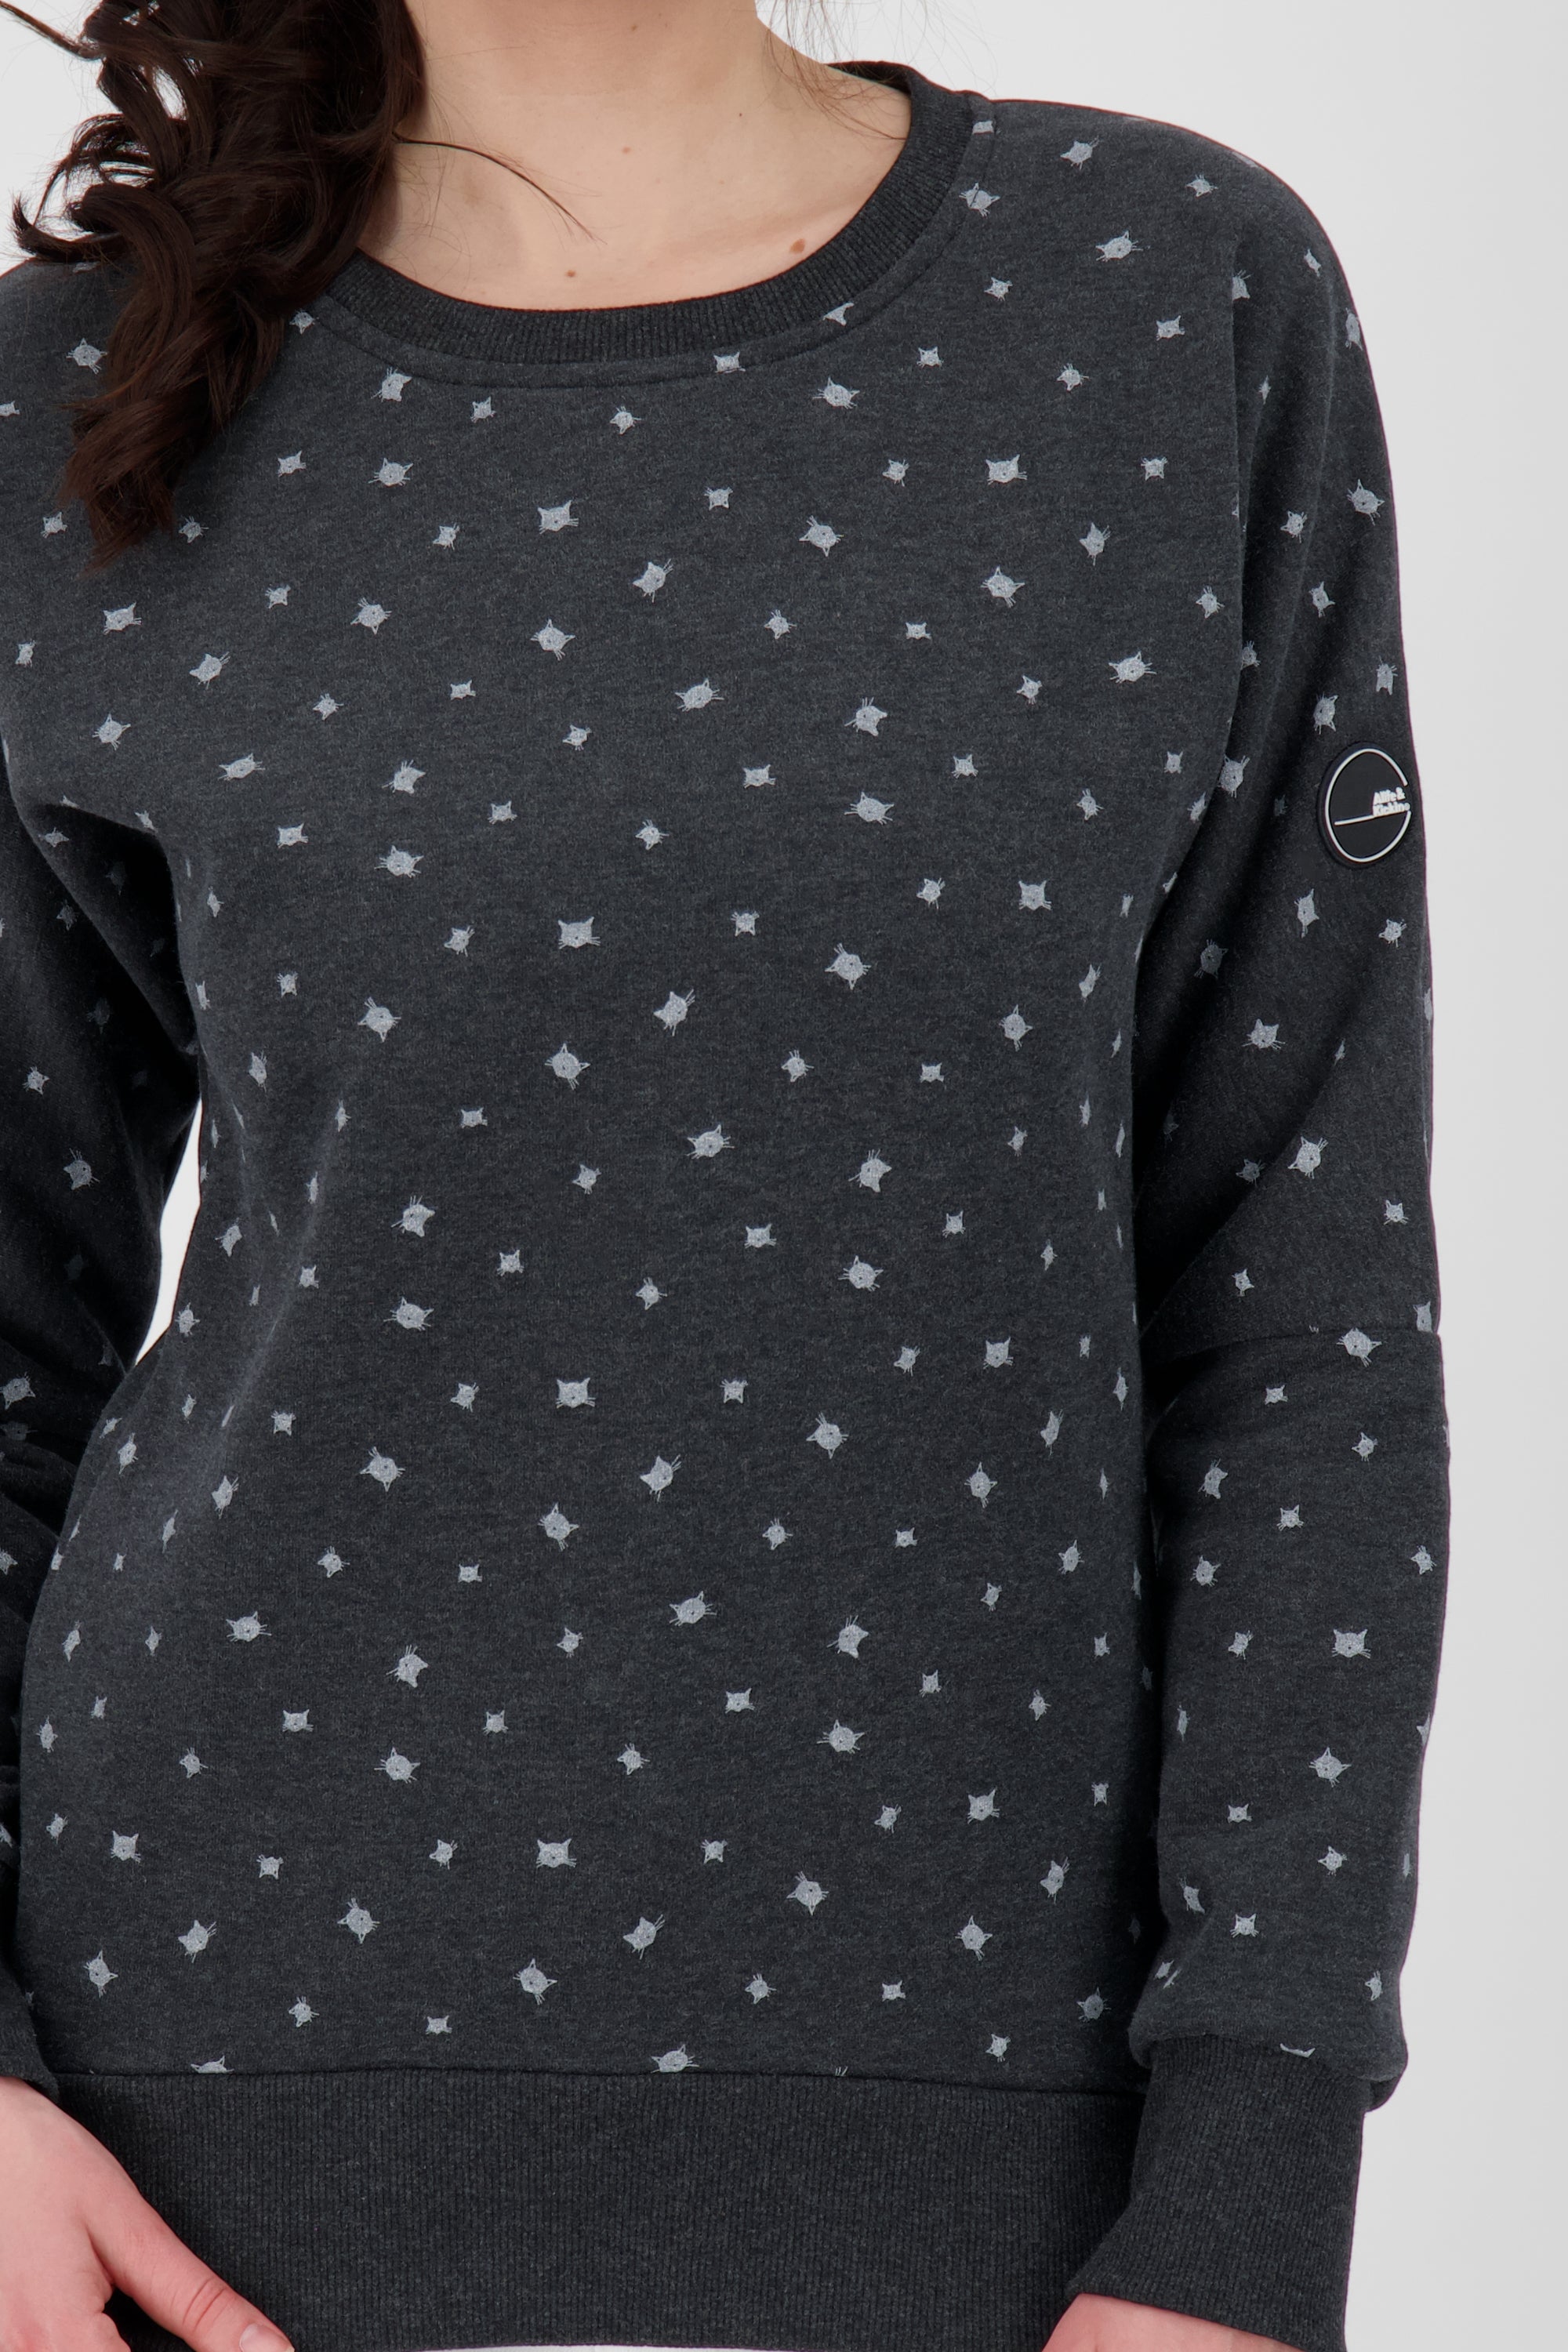 Damen-Sweater DarlaAK B für deinen Wohlfühlmoment Schwarz